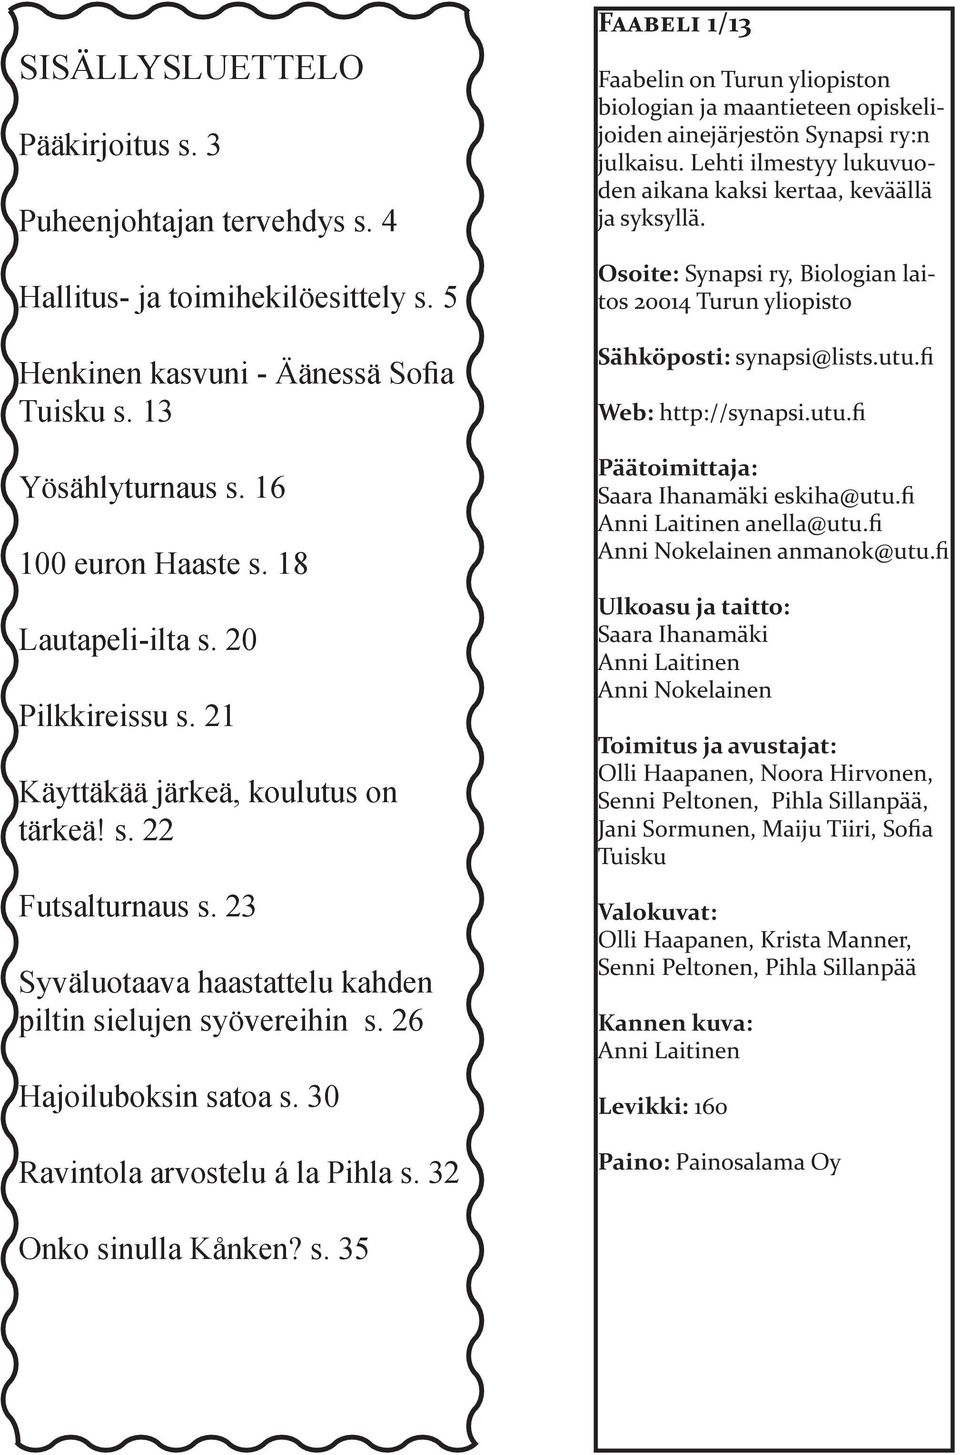 30 Ravintola arvostelu á la Pihla s. 32 Faabeli 1/13 Faabelin on Turun yliopiston biologian ja maantieteen opiskelijoiden ainejärjestön Synapsi ry:n julkaisu.